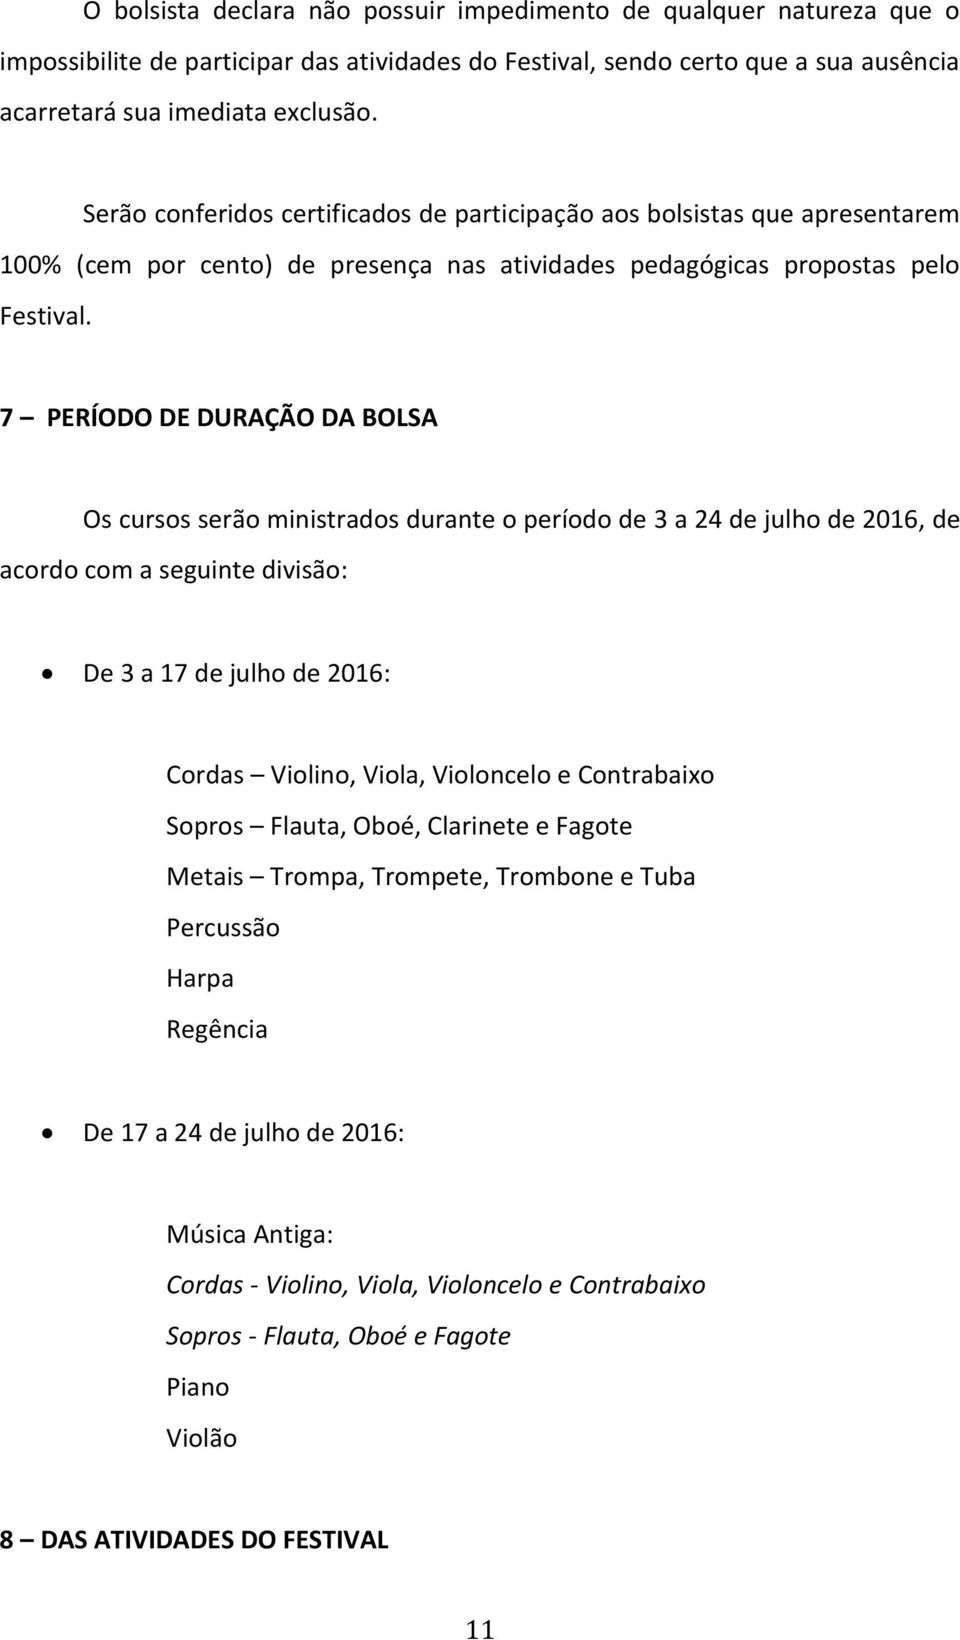 7 PERÍODO DE DURAÇÃO DA BOLSA Os cursos serão ministrados durante o período de 3 a 24 de julho de 2016, de acordo com a seguinte divisão: De 3 a 17 de julho de 2016: Cordas Violino, Viola, Violoncelo